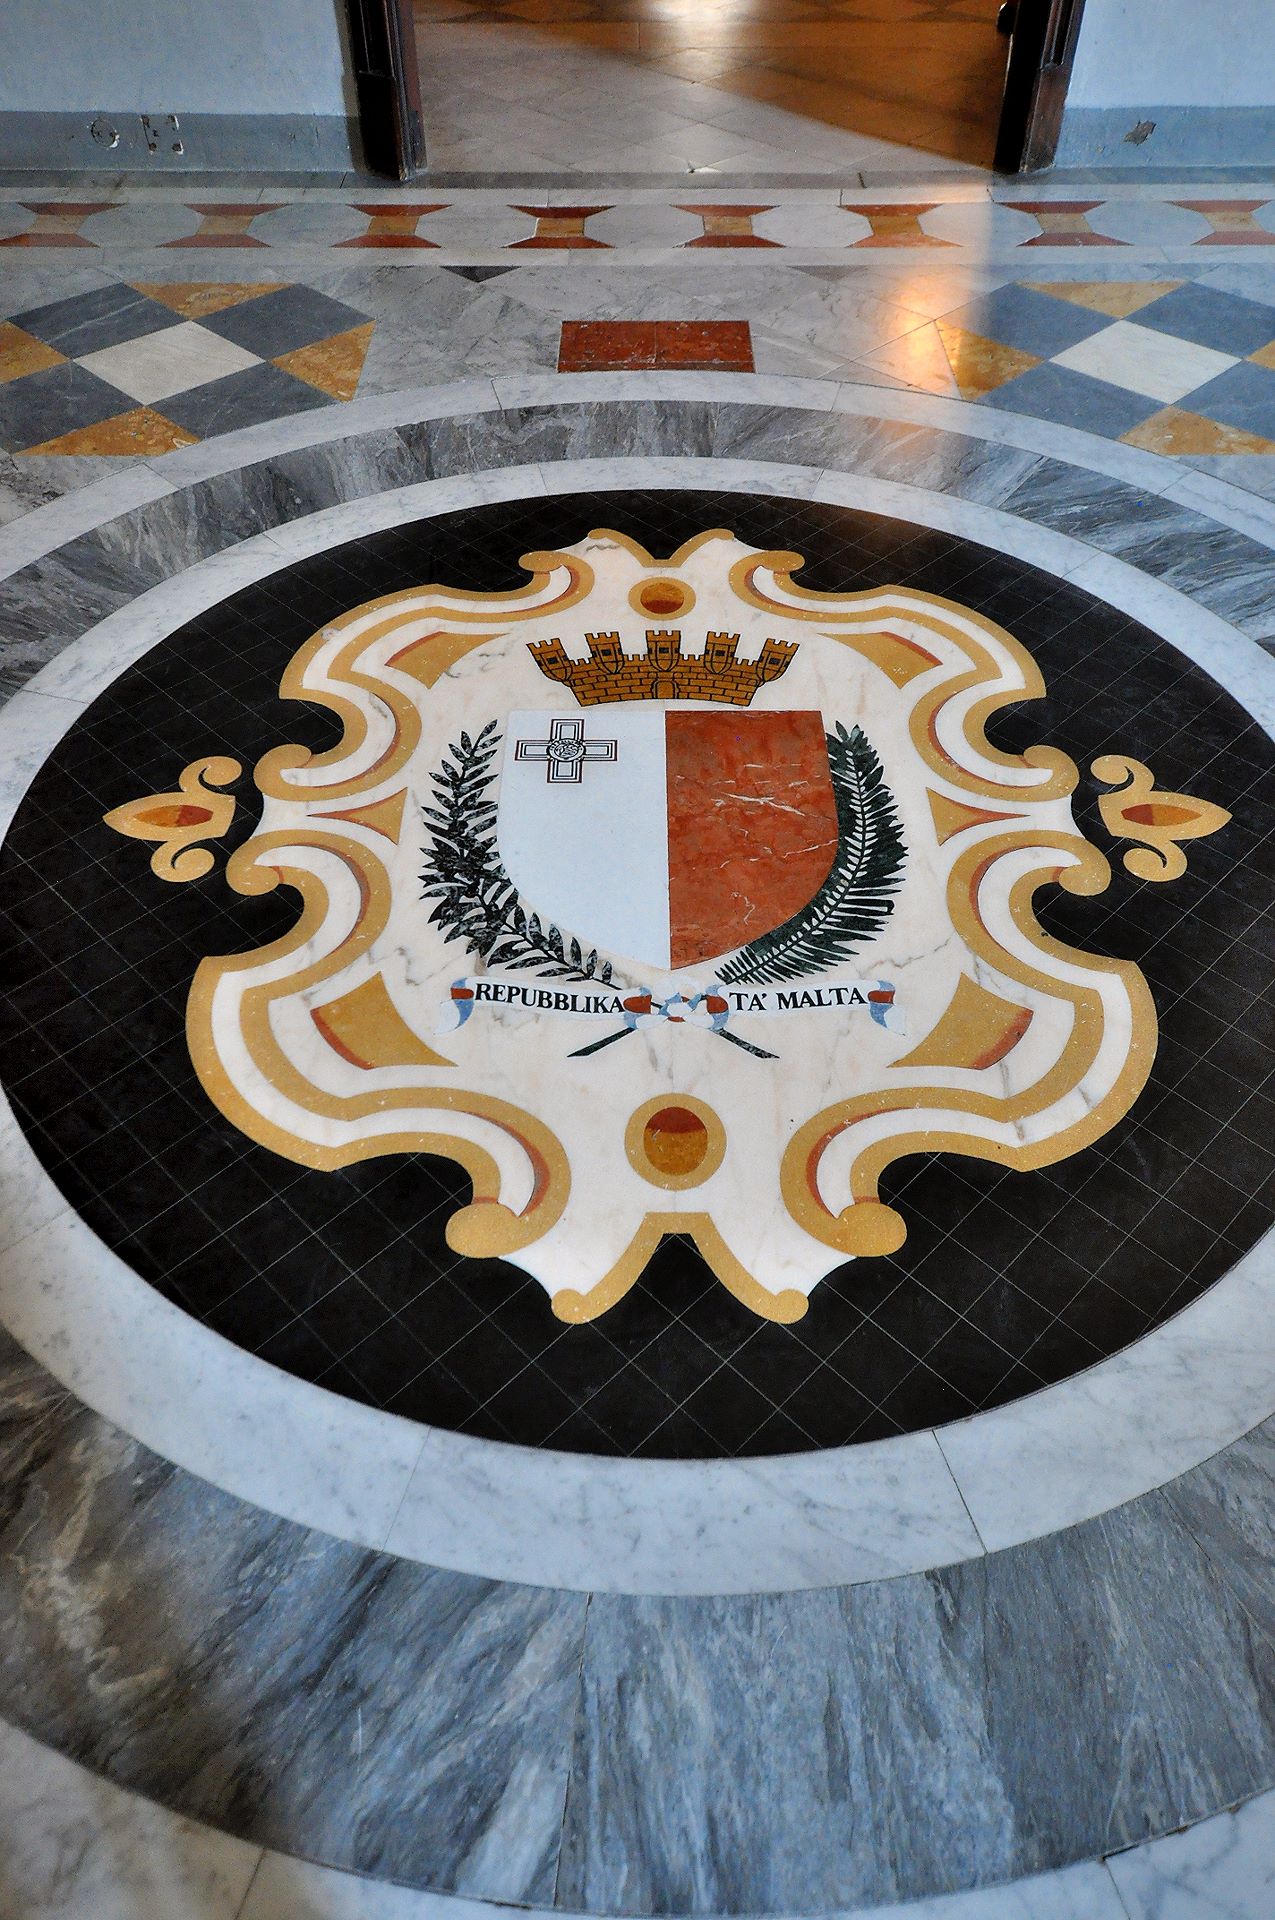 Seit 1964 ist Malta freie Republik, im Großmeisterpalast amtieren nun die Staatspräsidenten